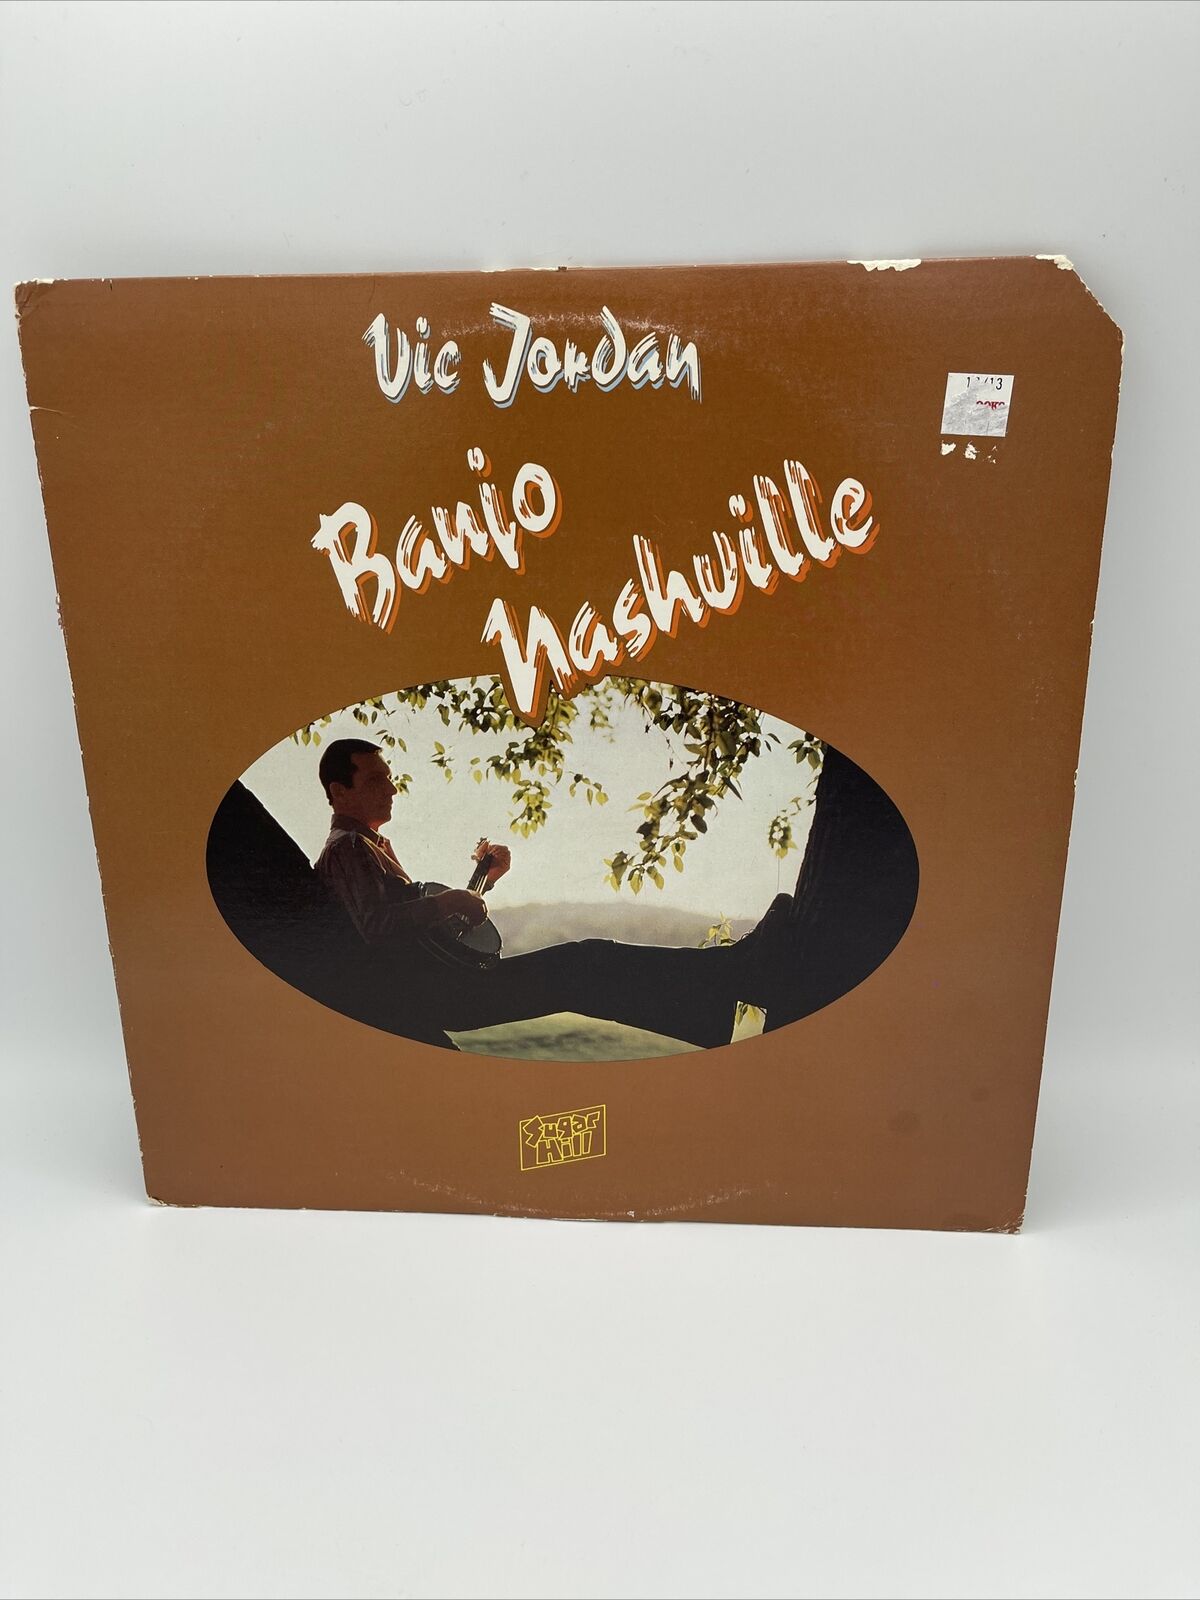 Banjo Nashville, Vic Jordan, LP, 1978, Sugar Hill, 3704